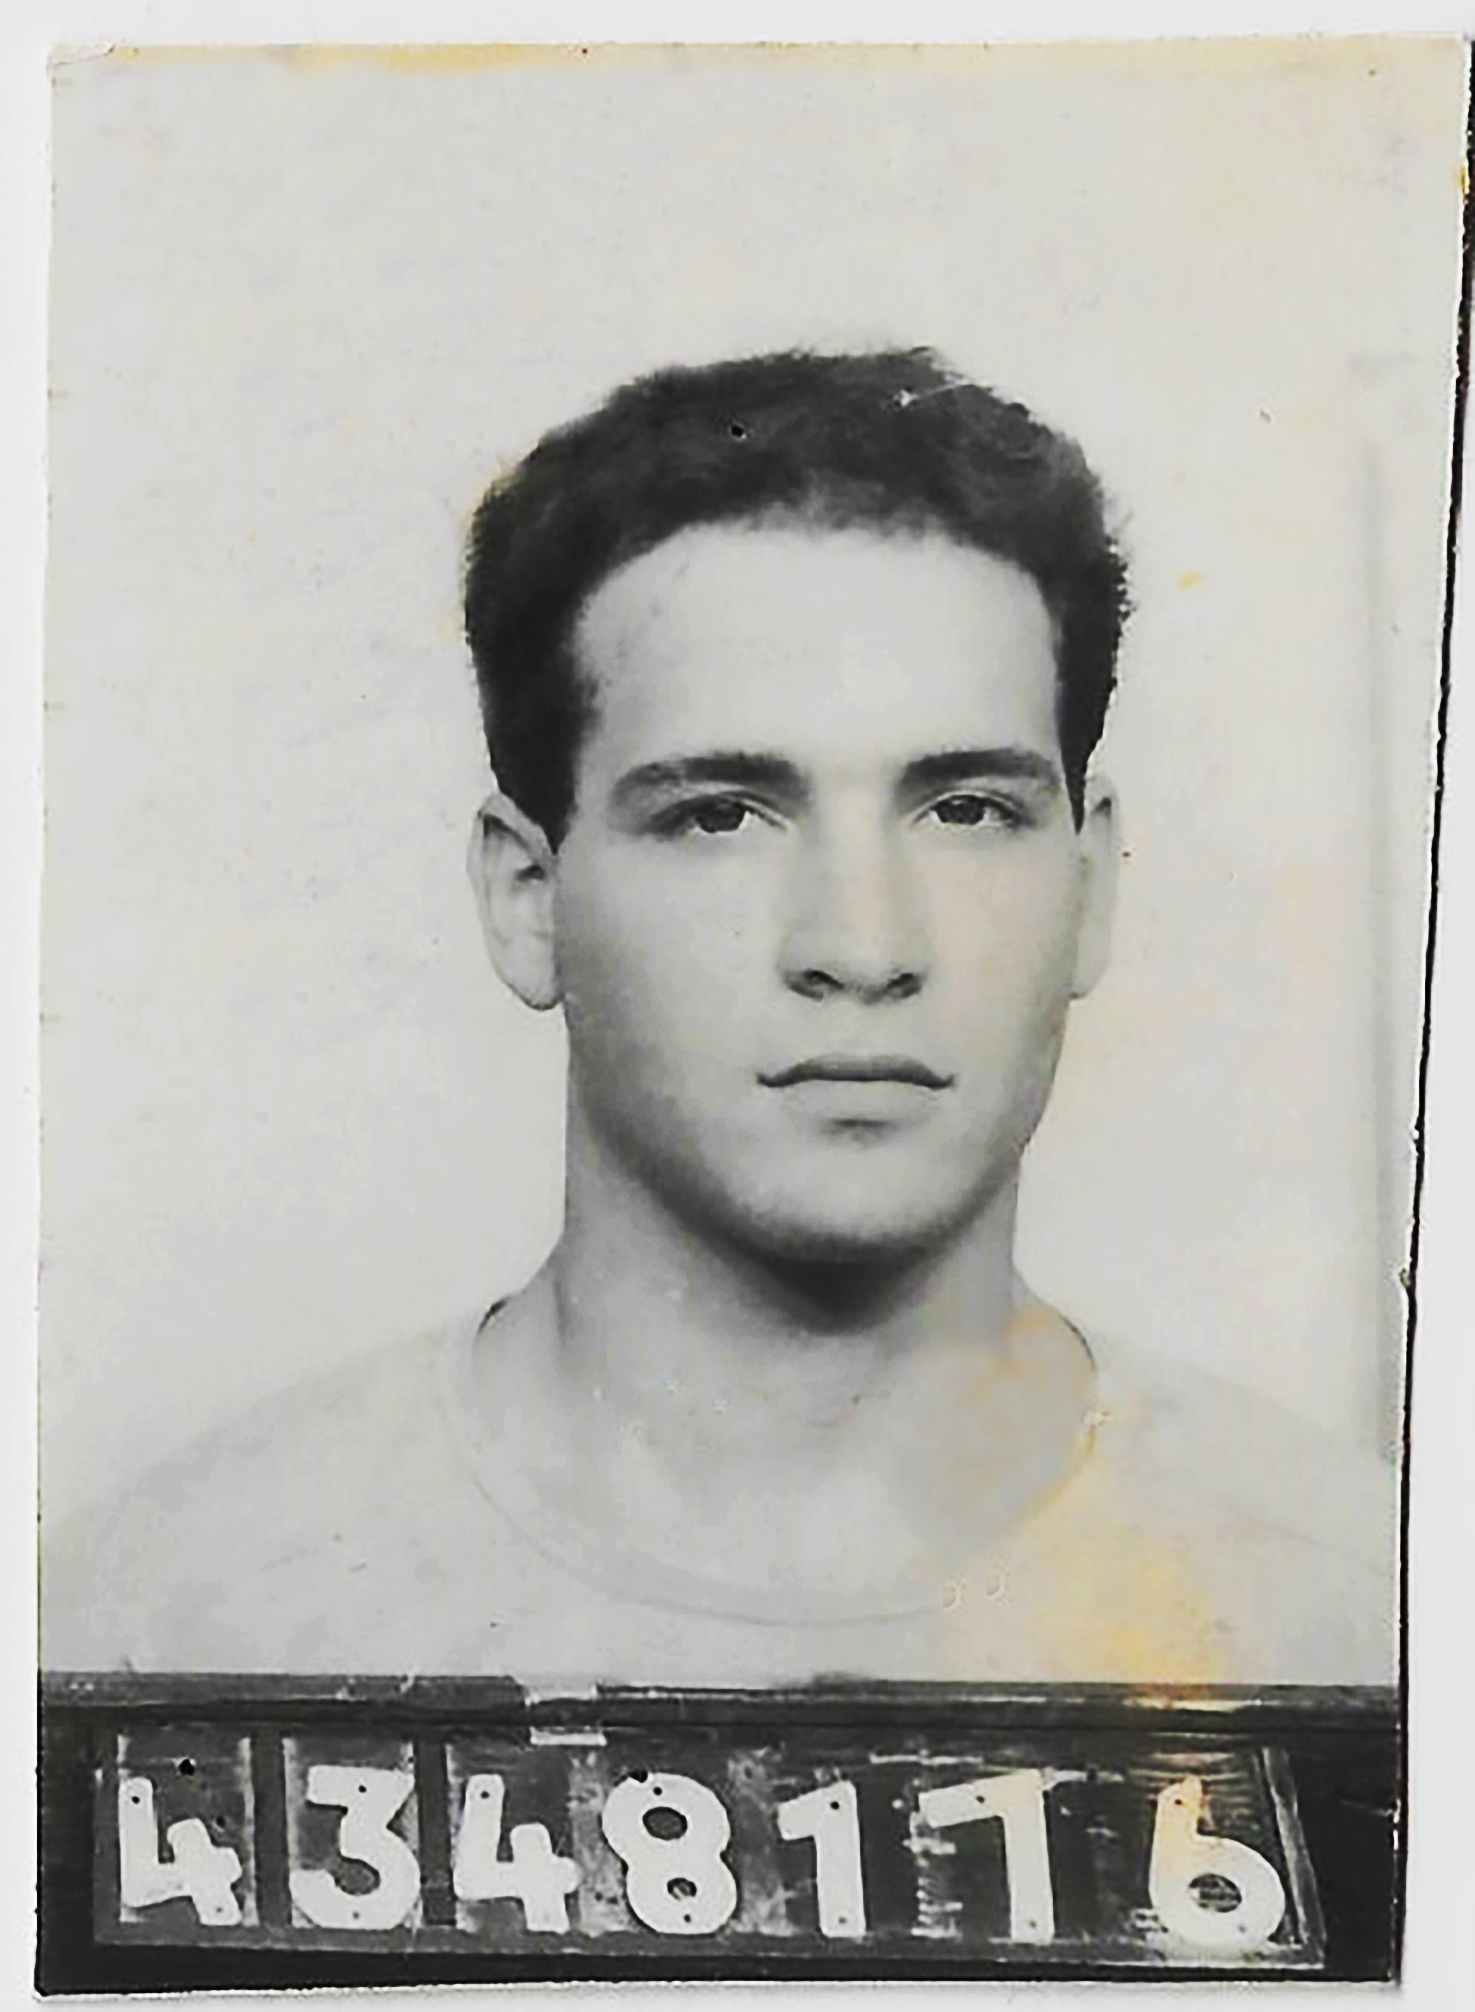 אסף שלום ליבוביץ' בצעירותו (צילום: אלבום פרטי)